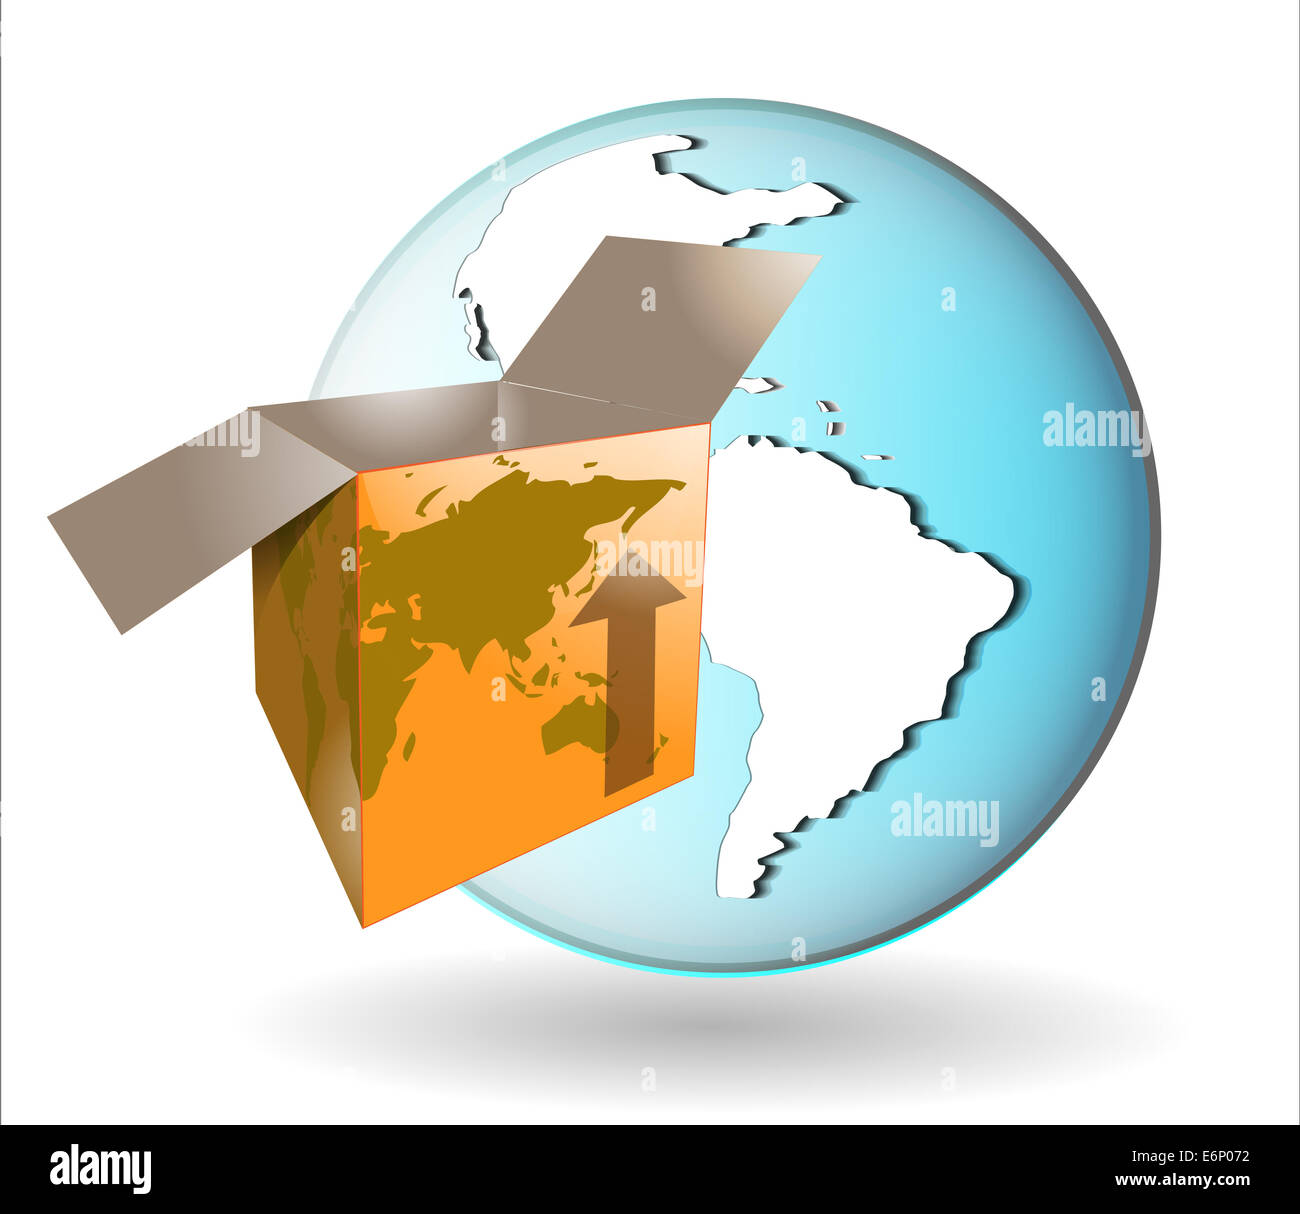 Illustrazione della confezione per la spedizione con globo terrestre Foto Stock